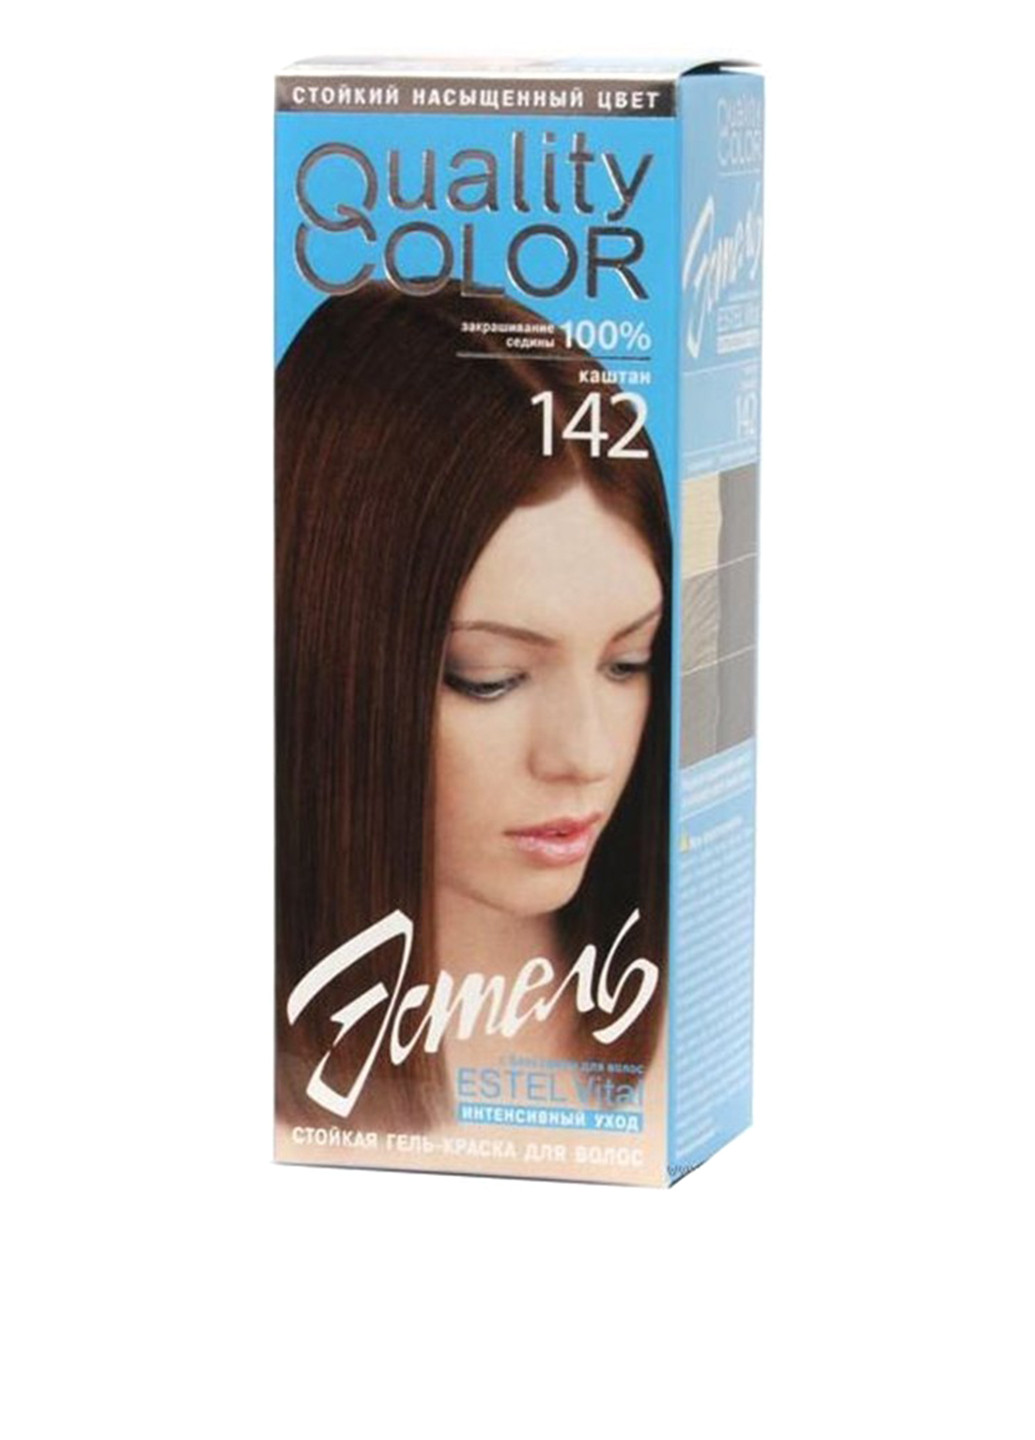 142, гель-краска для волос Vital Quality Color (каштан) Estel (75099545)